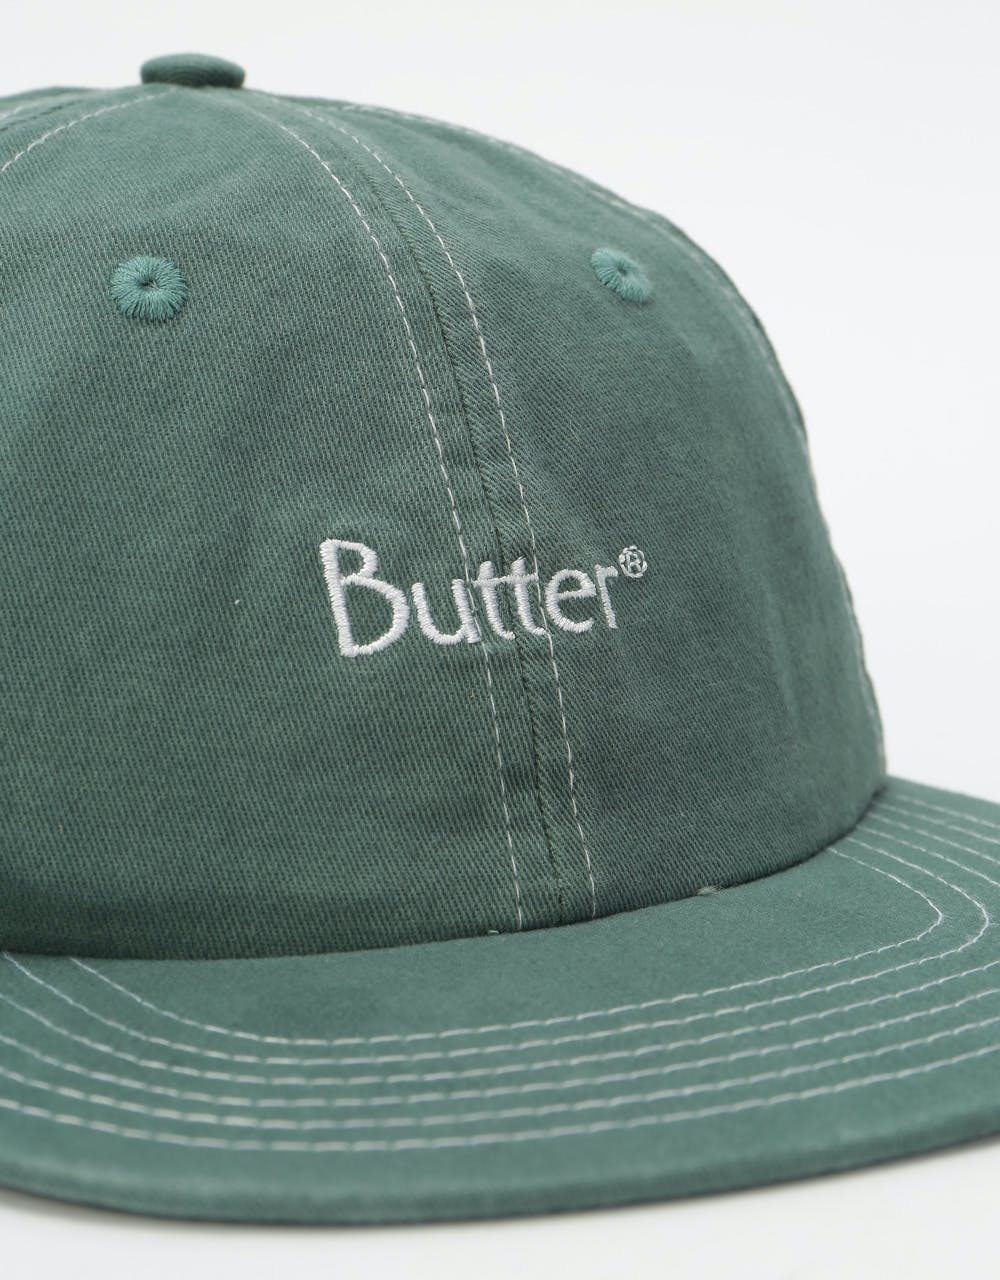 Butter Stitch 6 Panel Cap - Spruce